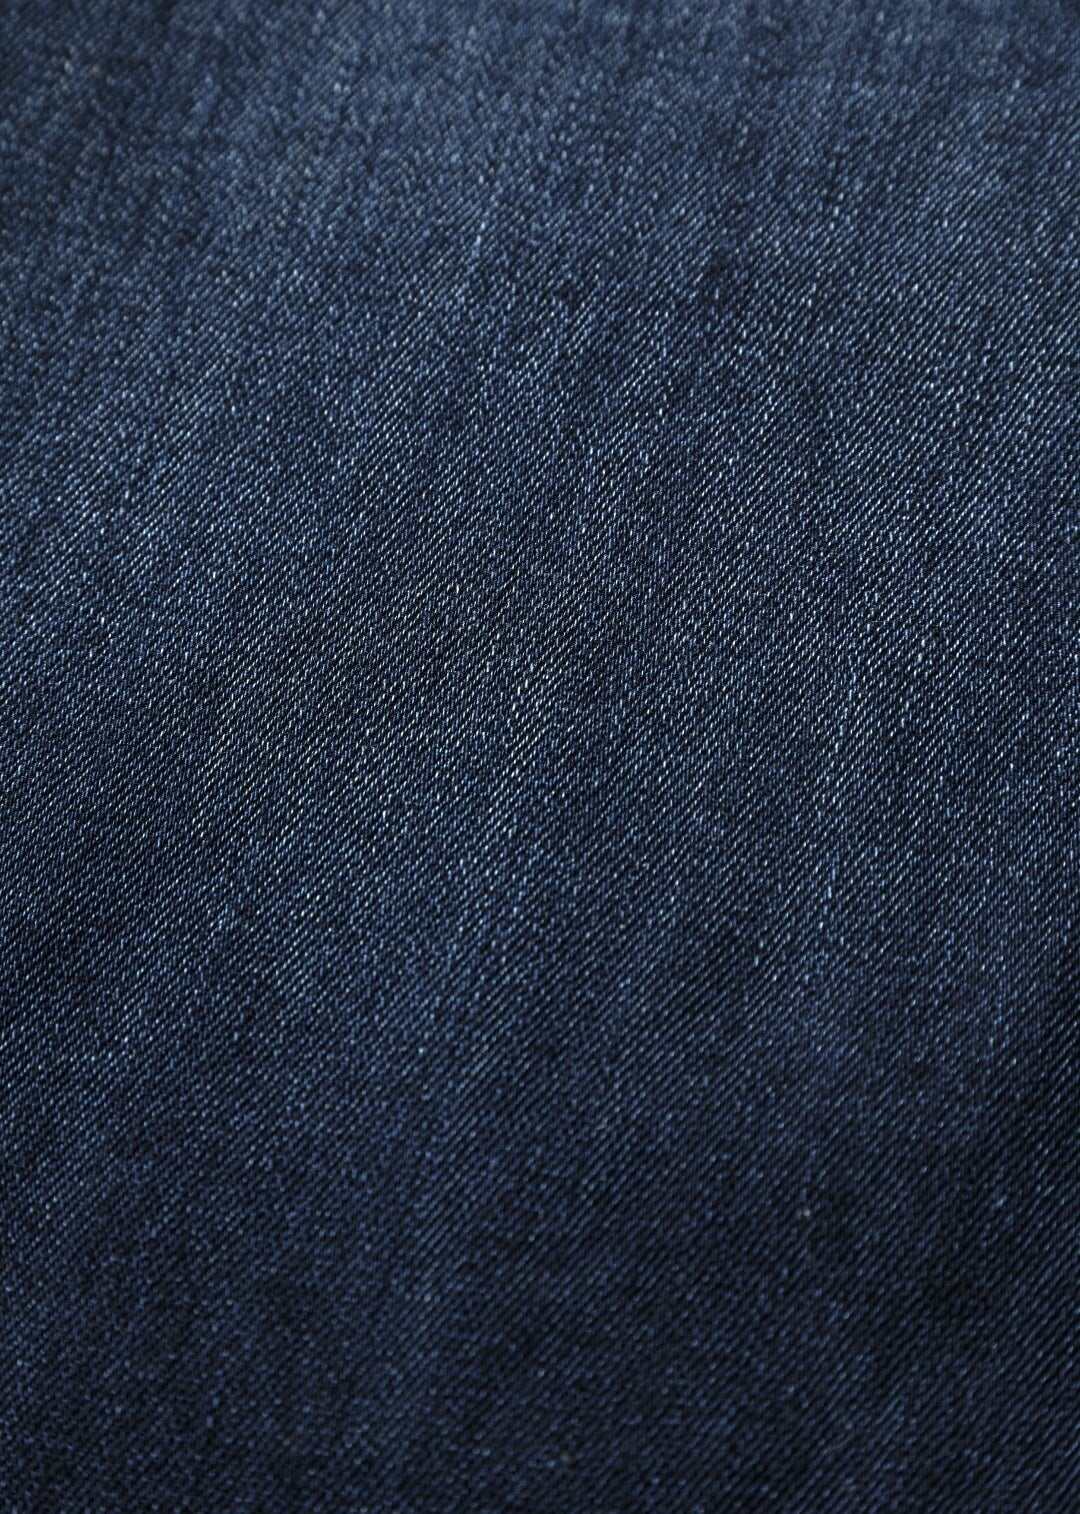 2nd Day COMFORT - Flared Jeans - dark stone wash/dark grey